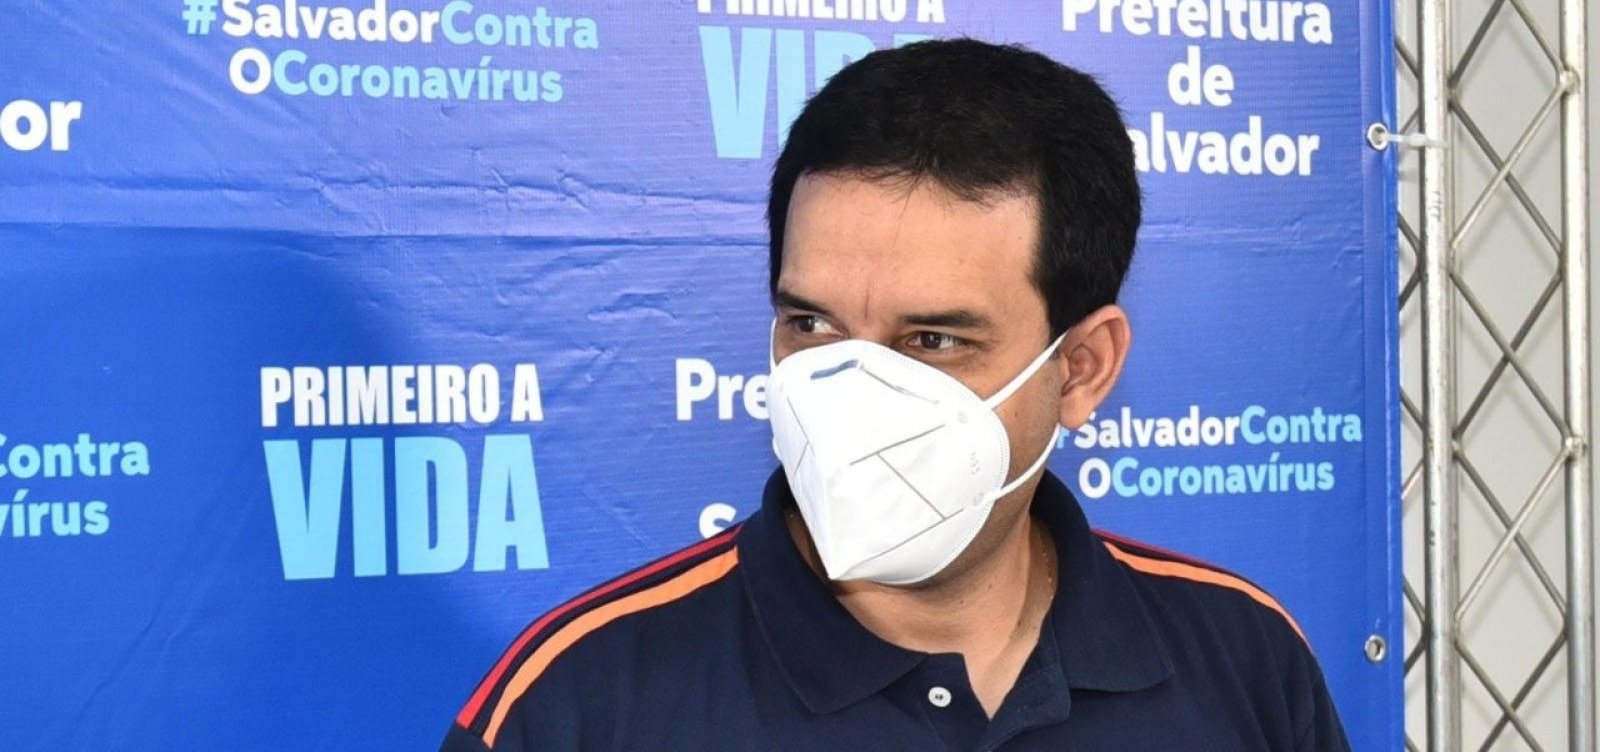 Secretário da Saúde afirma que Hospital Municipal de Salvador volta a operar com quantidade máxima de leitos